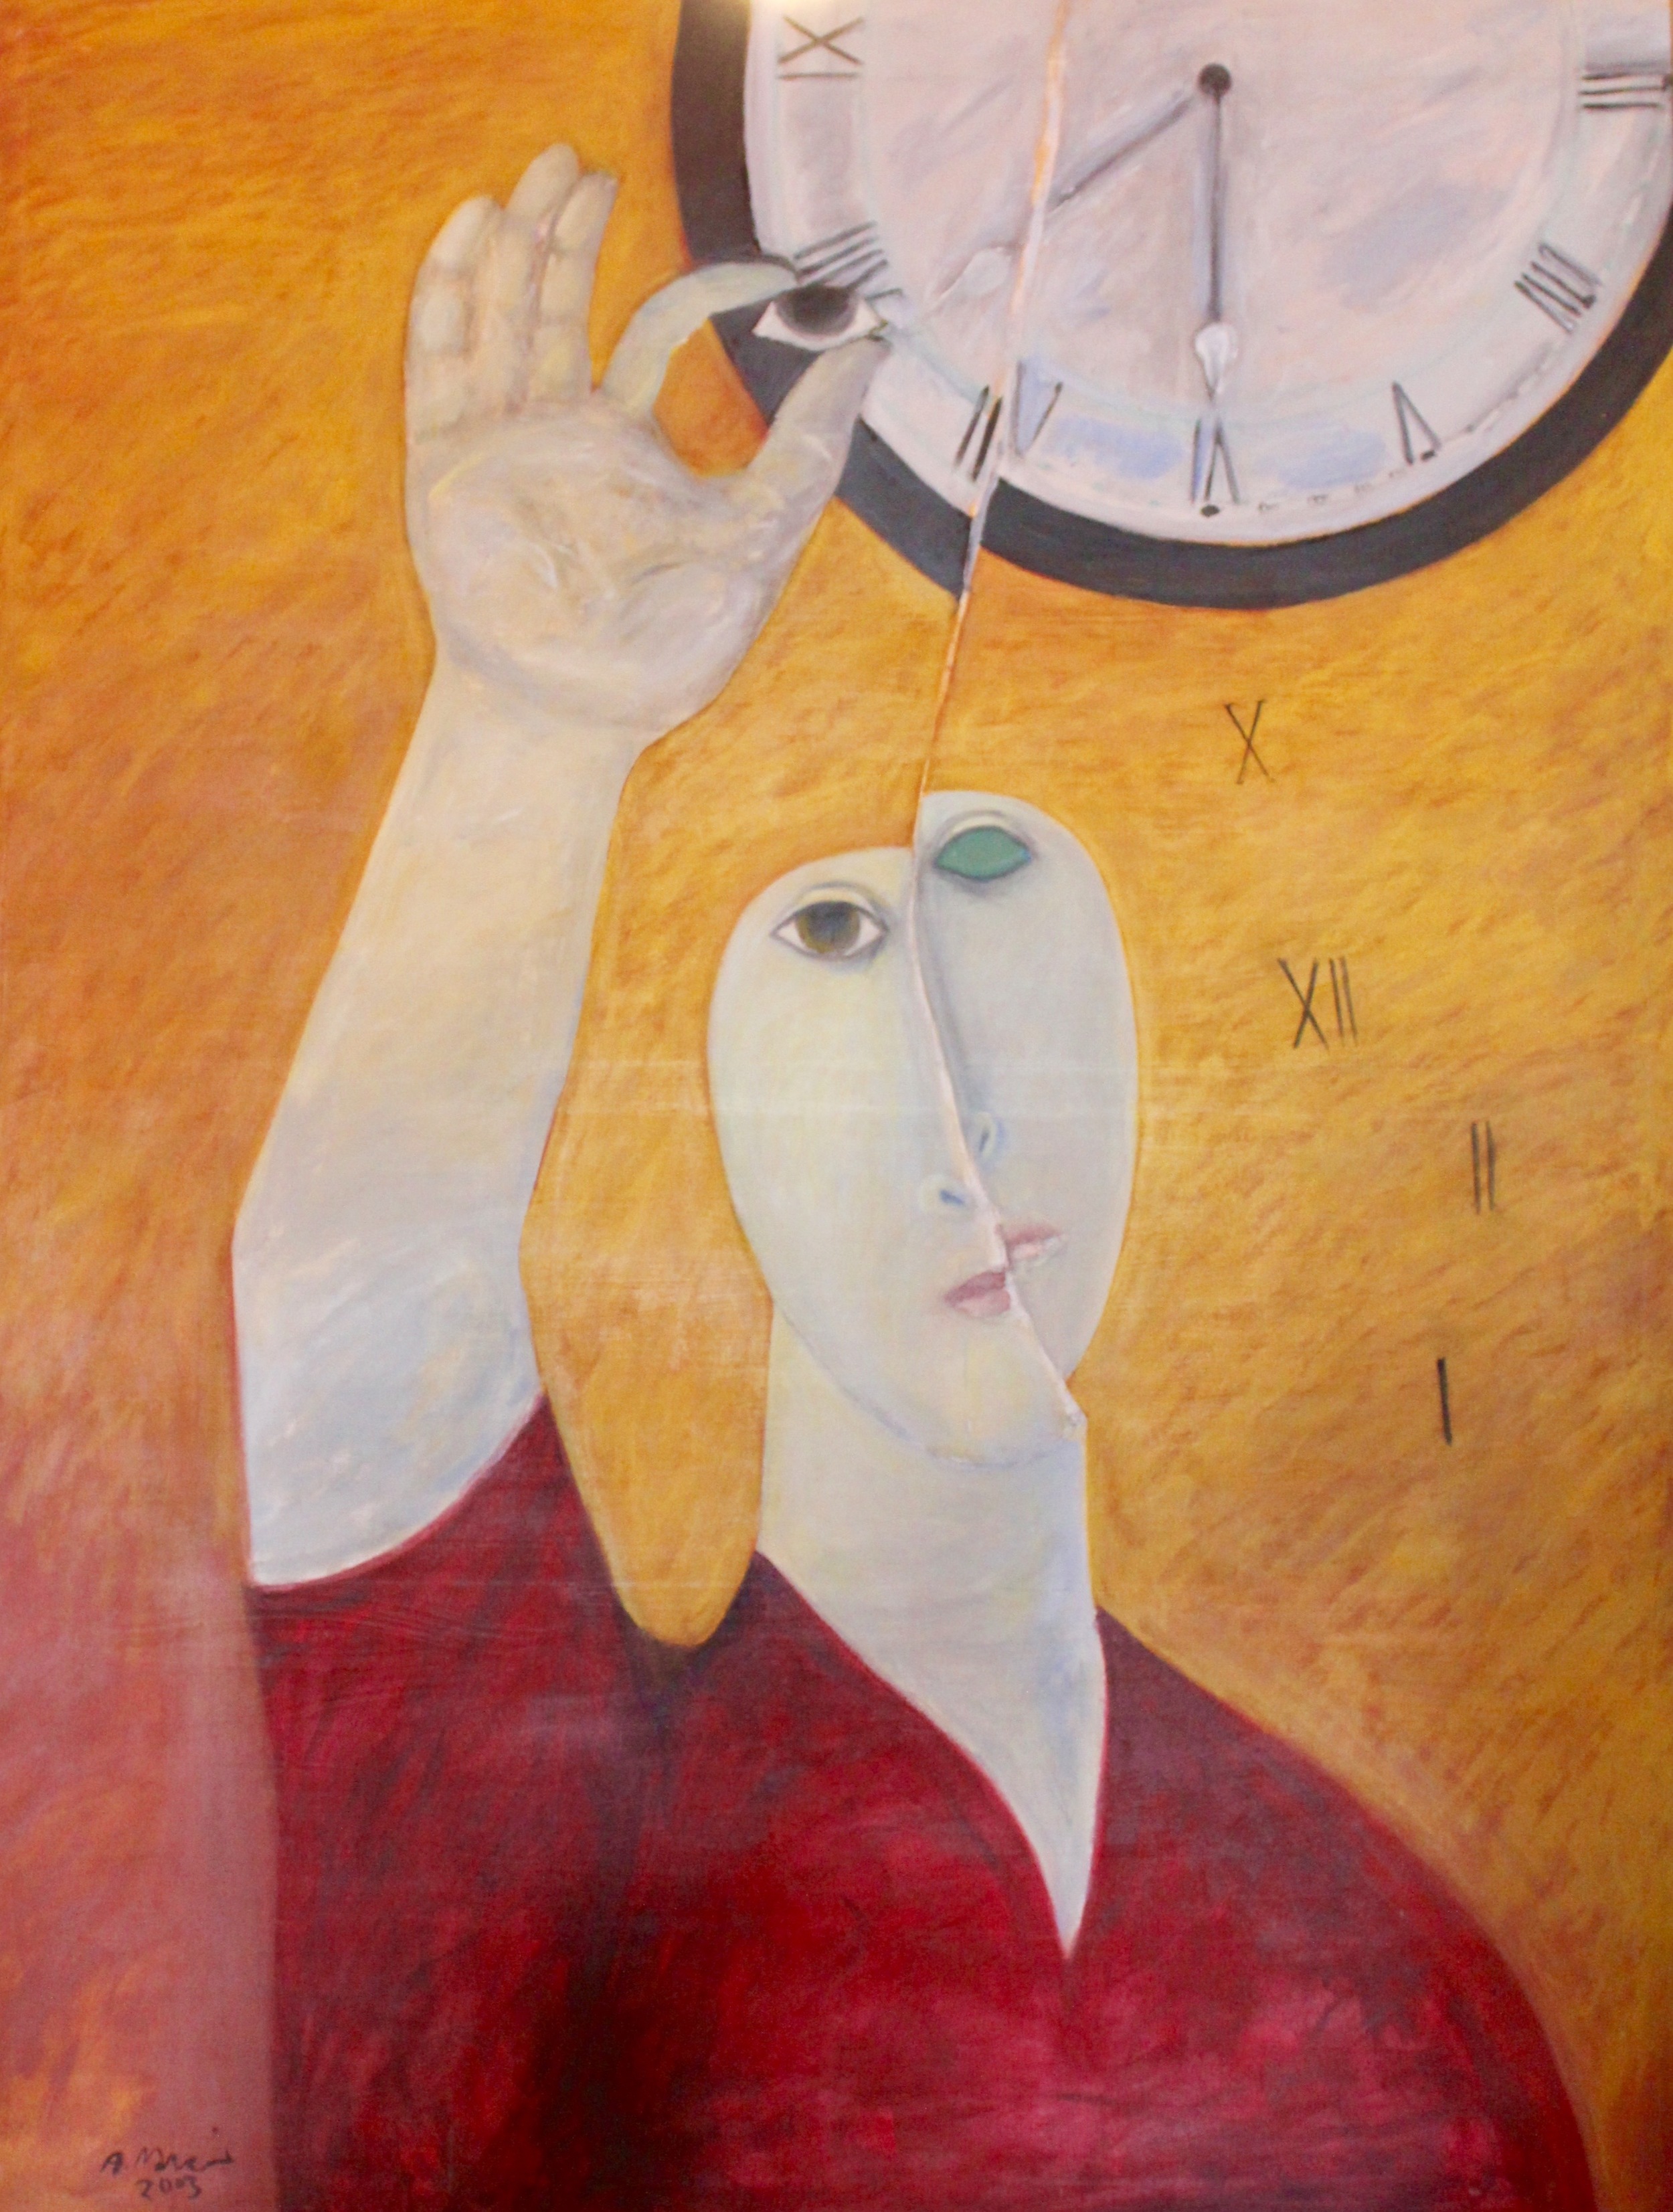  Ahmed Morsi, Eyeing Time,&nbsp;2000,&nbsp;Acrylic on canvas,&nbsp;199 x 154 cm.    